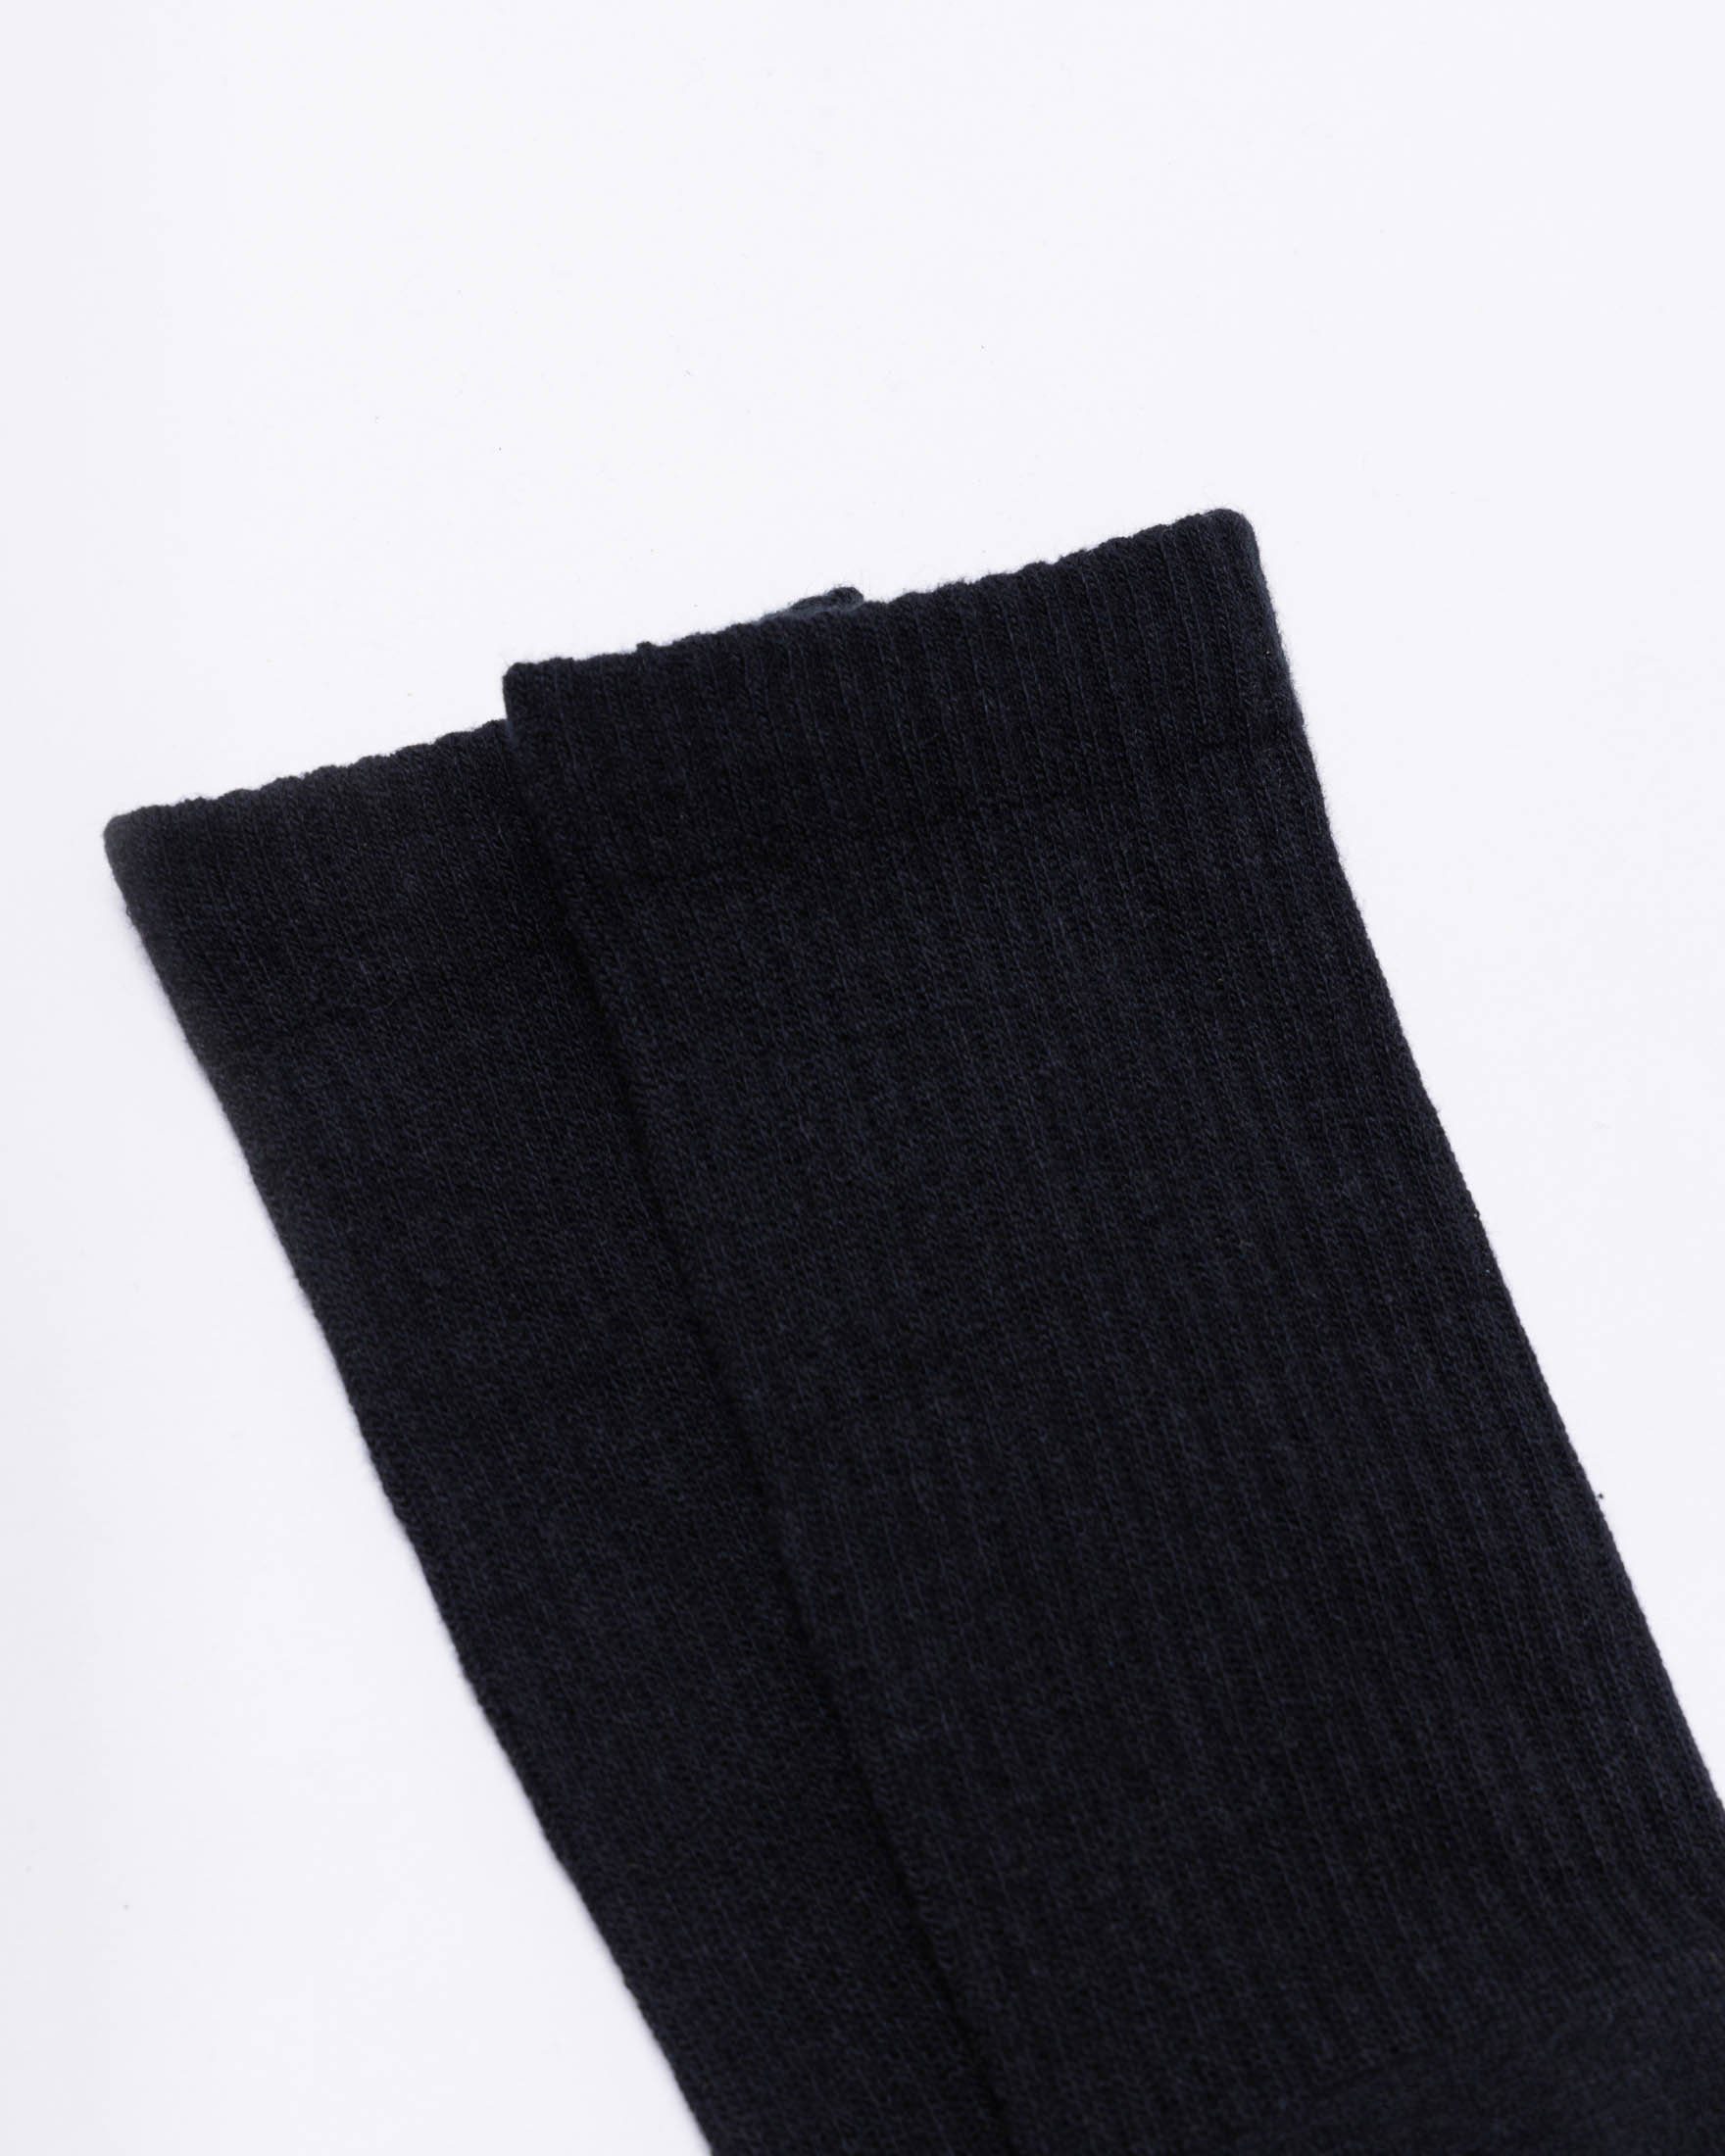 Vollfrotteesohle, Stiefel (2-Paar) für Arbeitssocken Akzente Bio-Baumwolle mit stabile perfekt Schwarz/Weiße SNOCKS aus